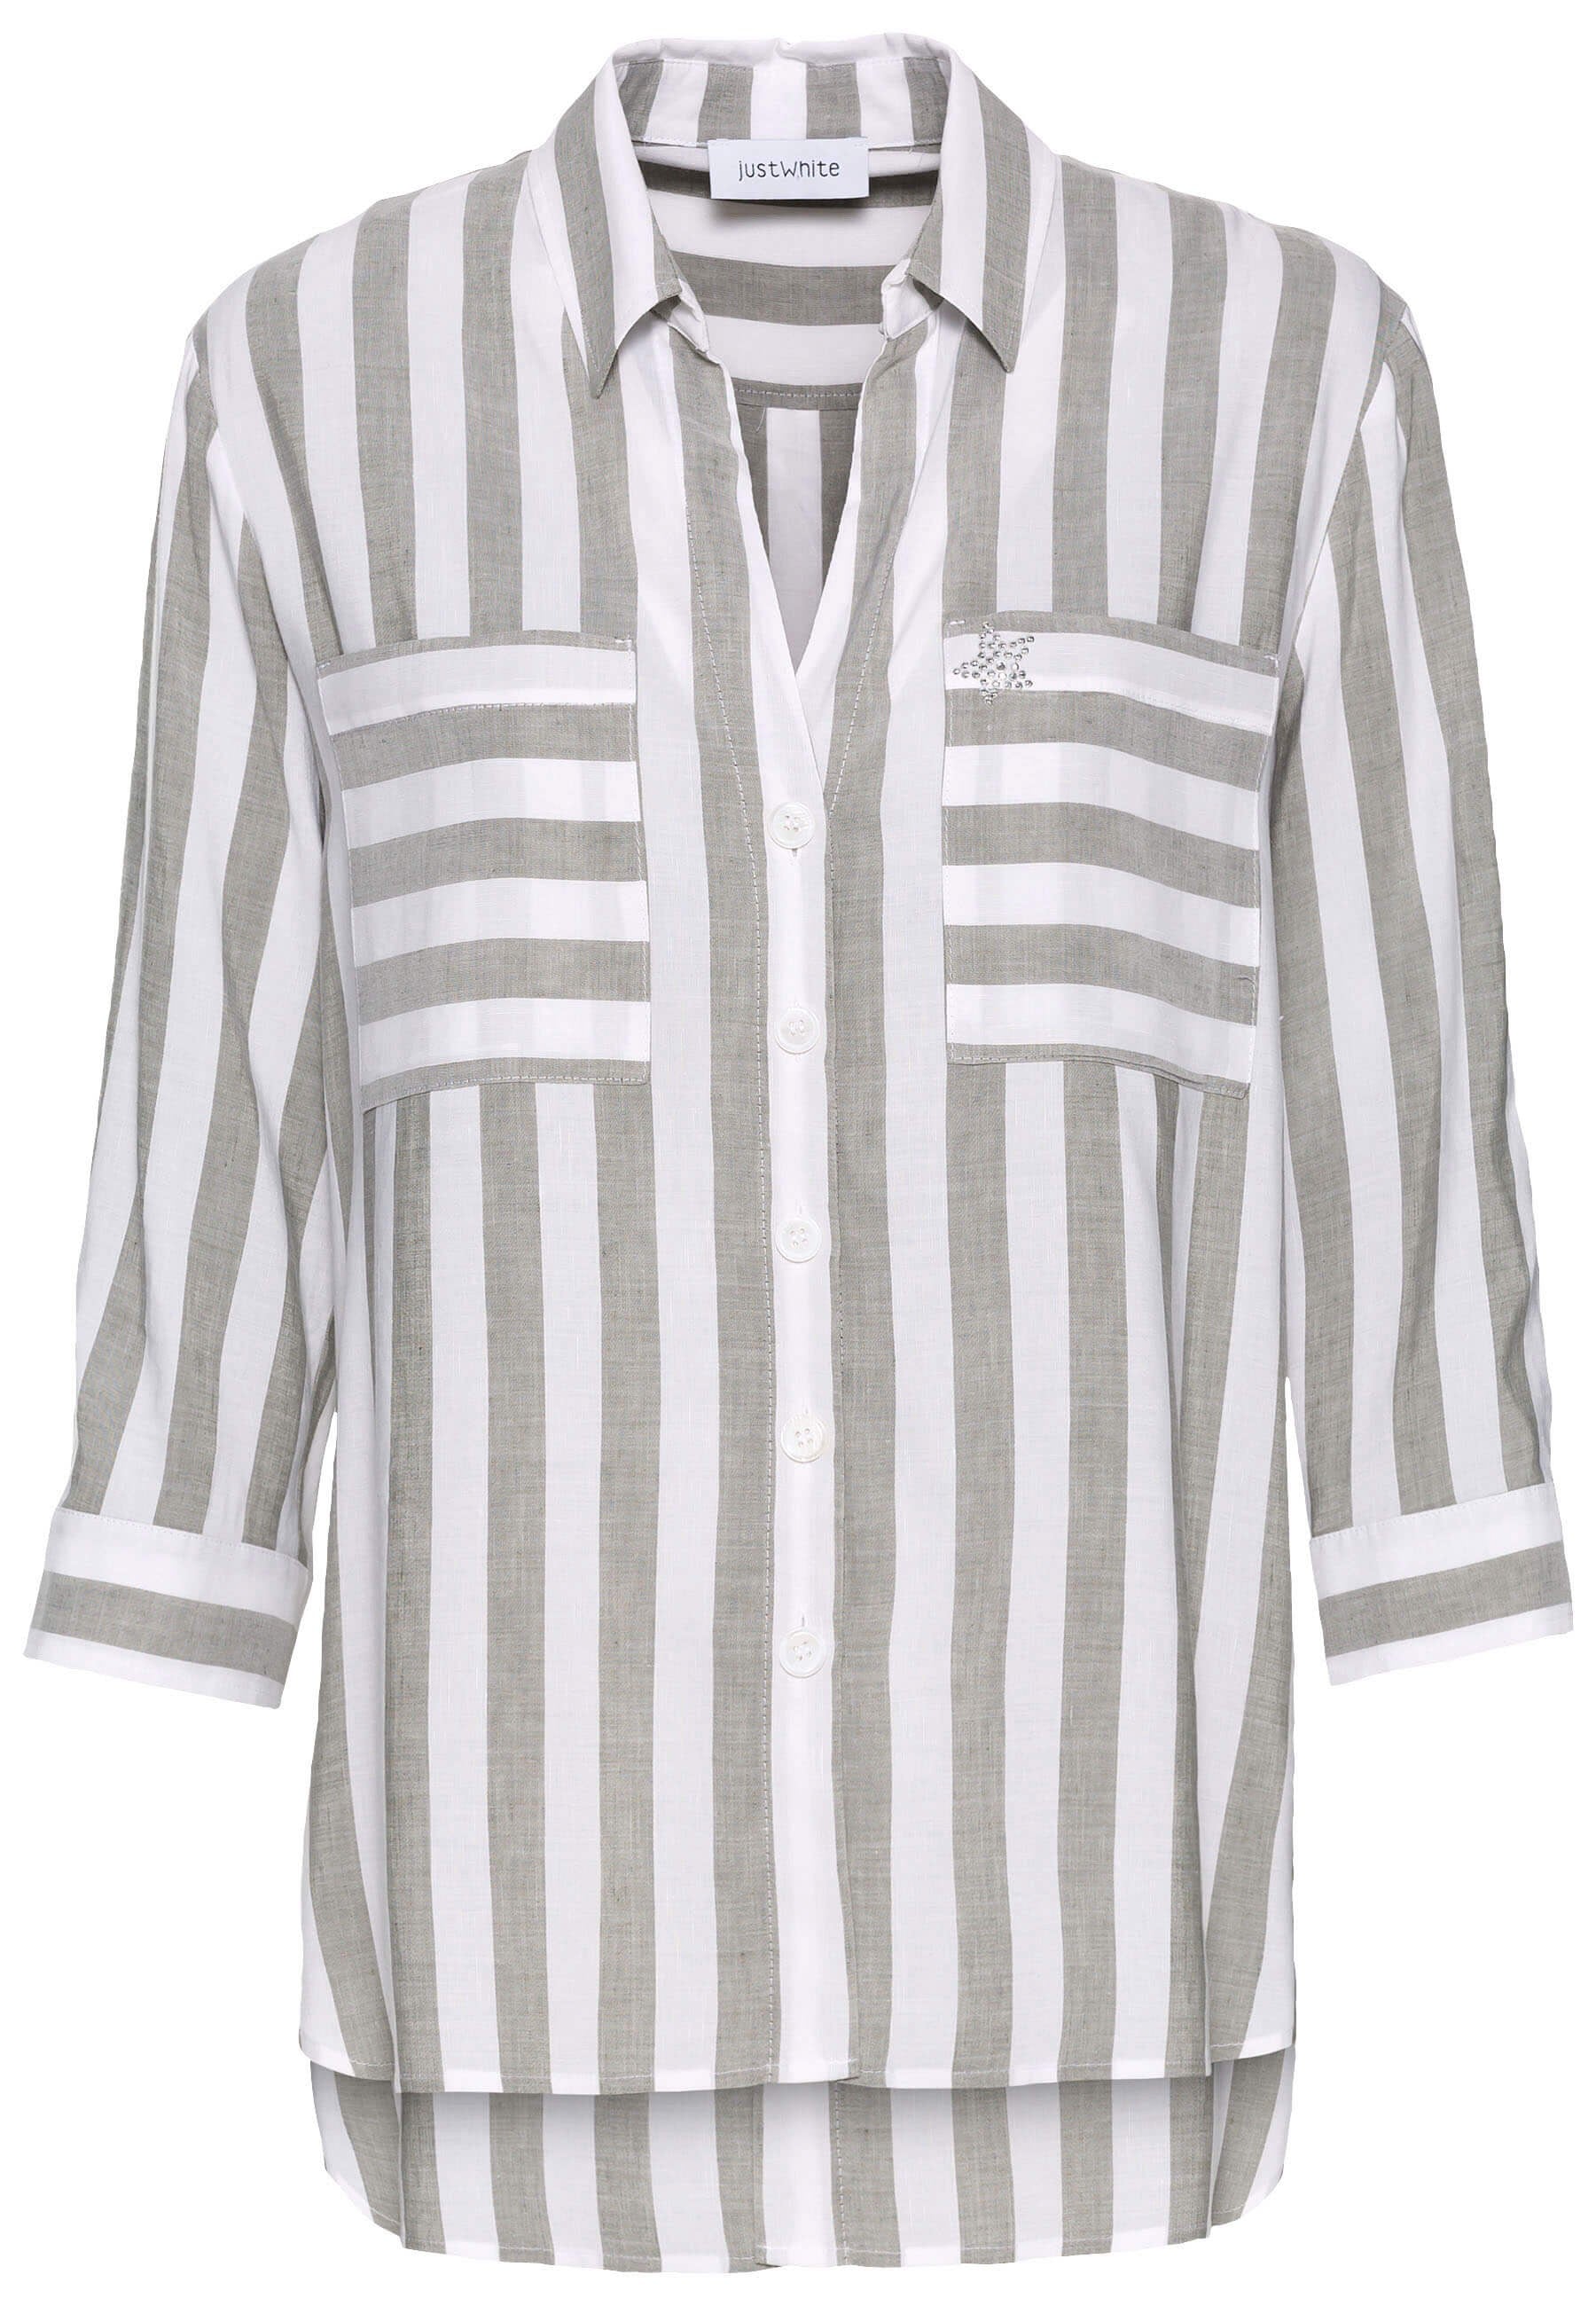 Just White Stripe Shirt Khaki